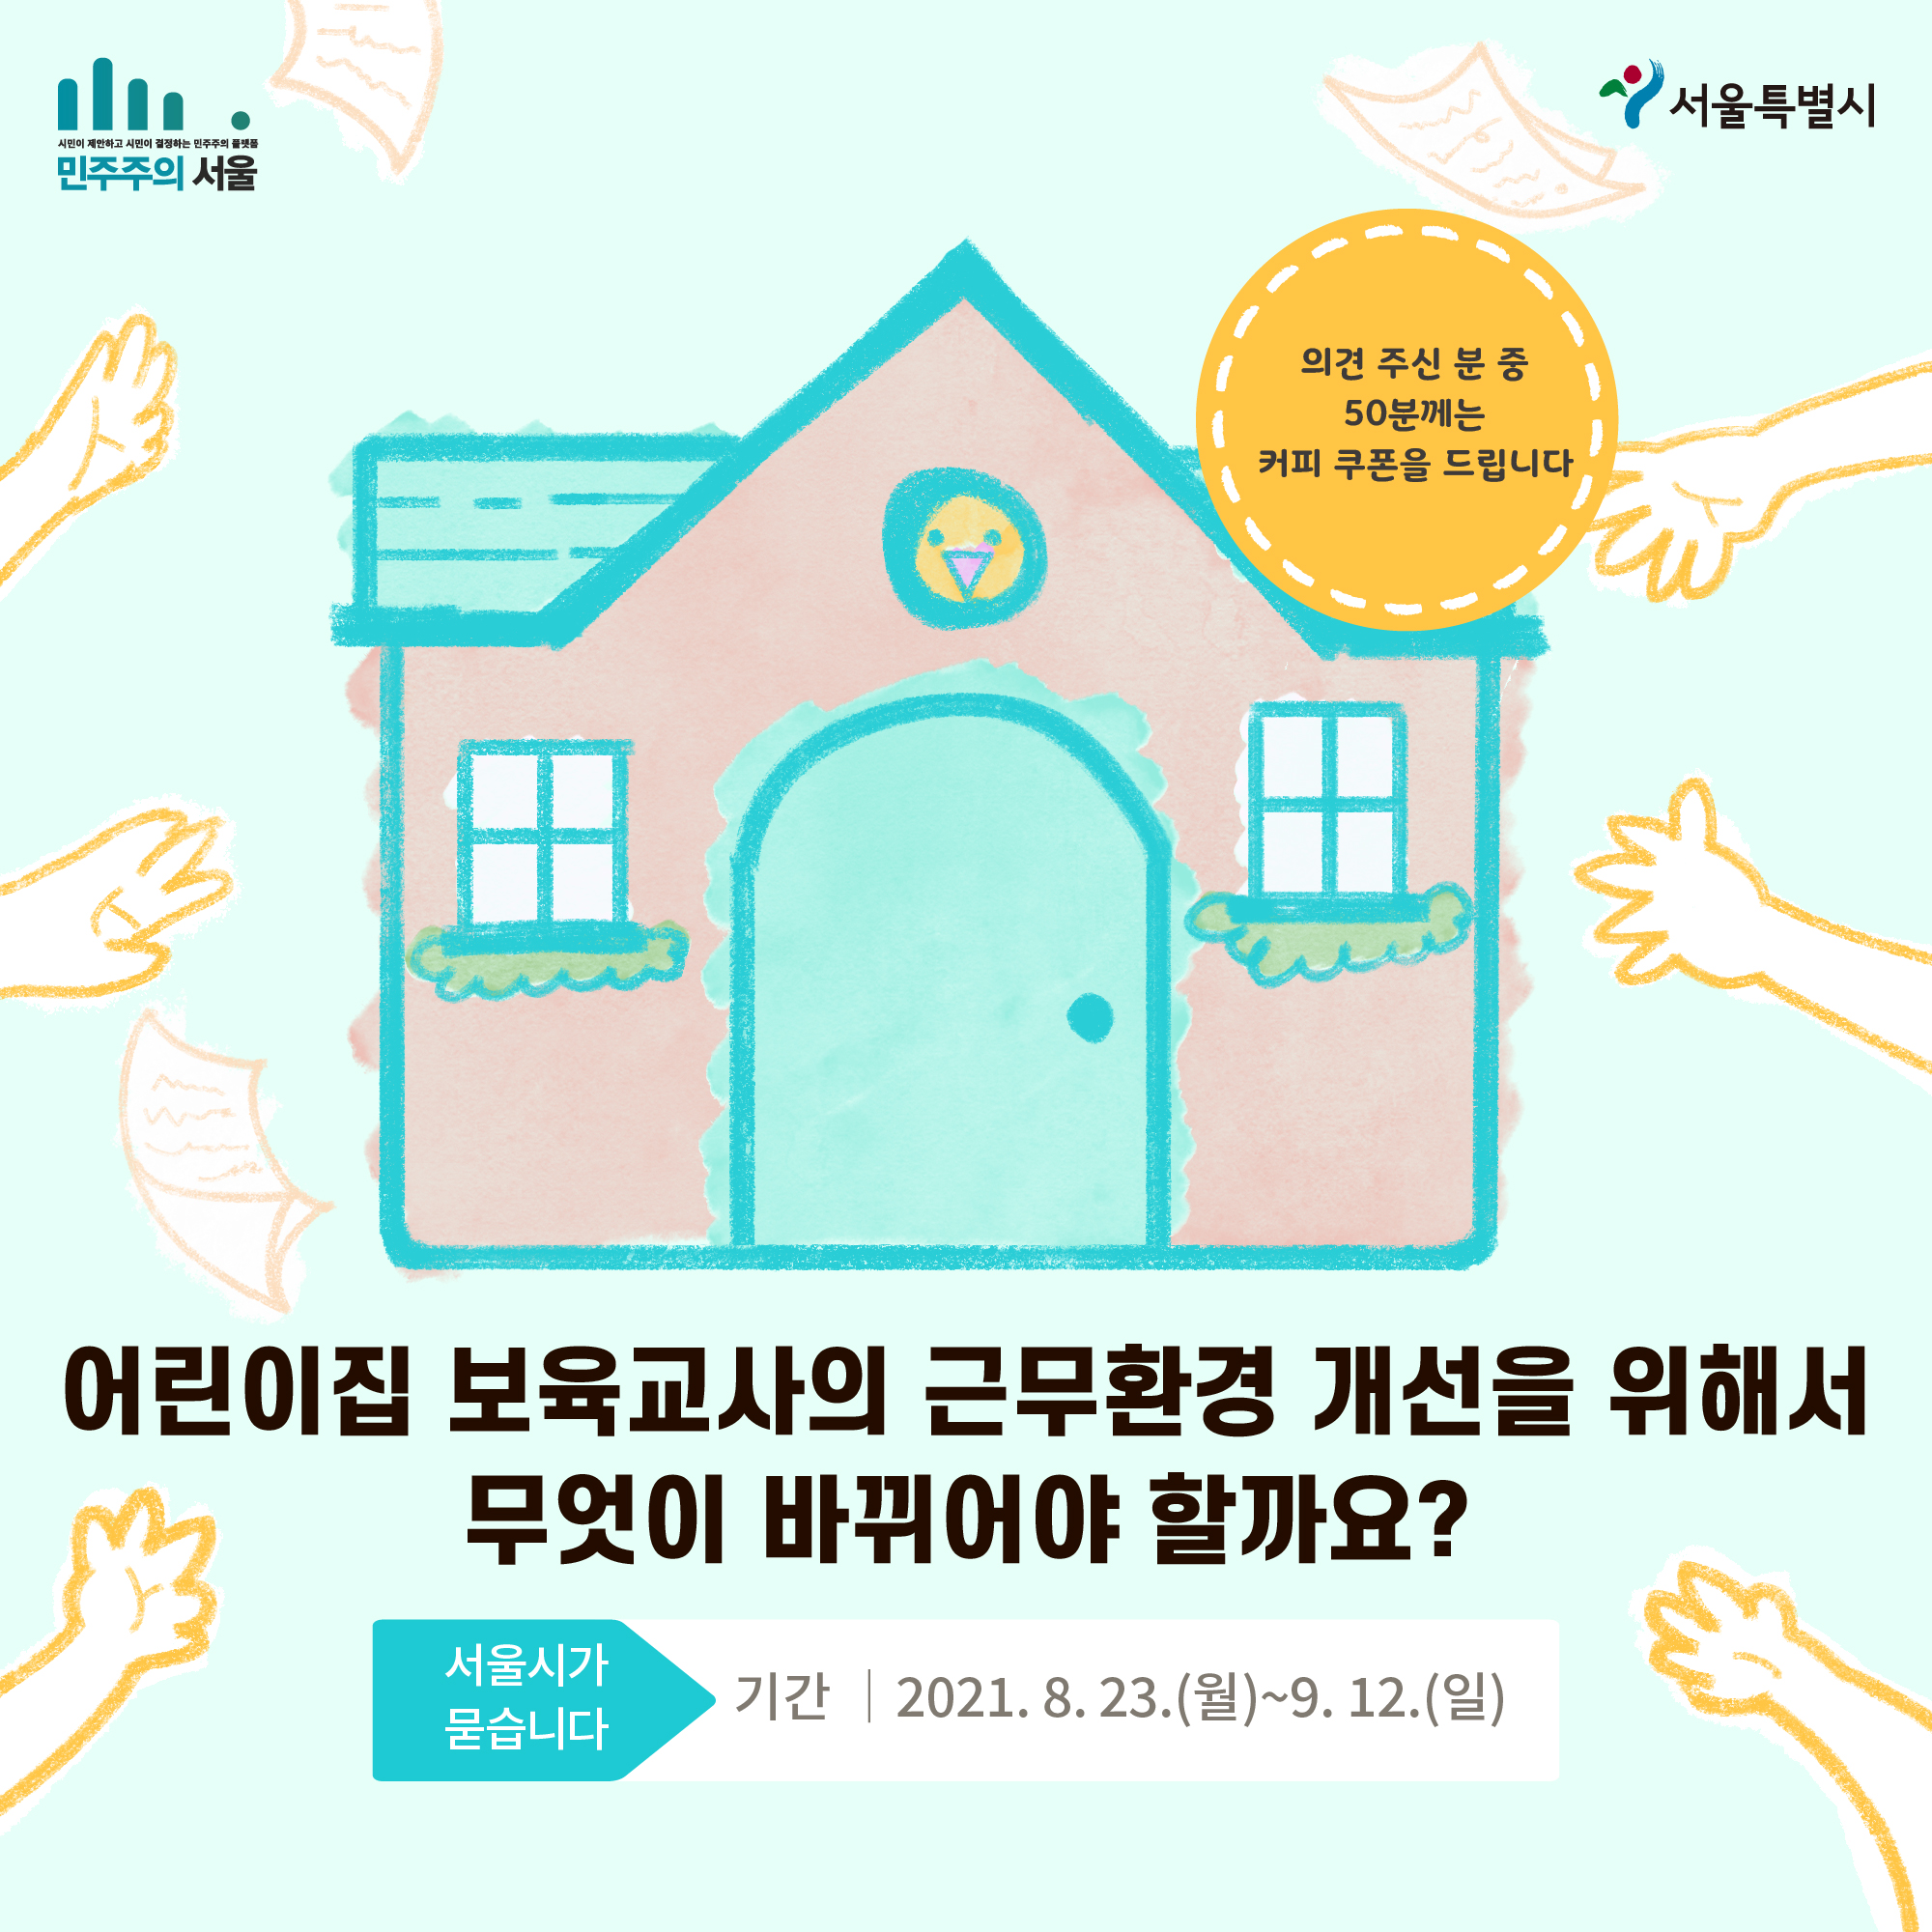 어린이집 보육교사의 근무환경 개선을 위해서 무엇이 바뀌어야 할까요? 서울시가 묻습니다 기간|2021.8.23(월)~9.12(일) 의견 주신 분 중 50분께는 커피 쿠폰을 드립니다.